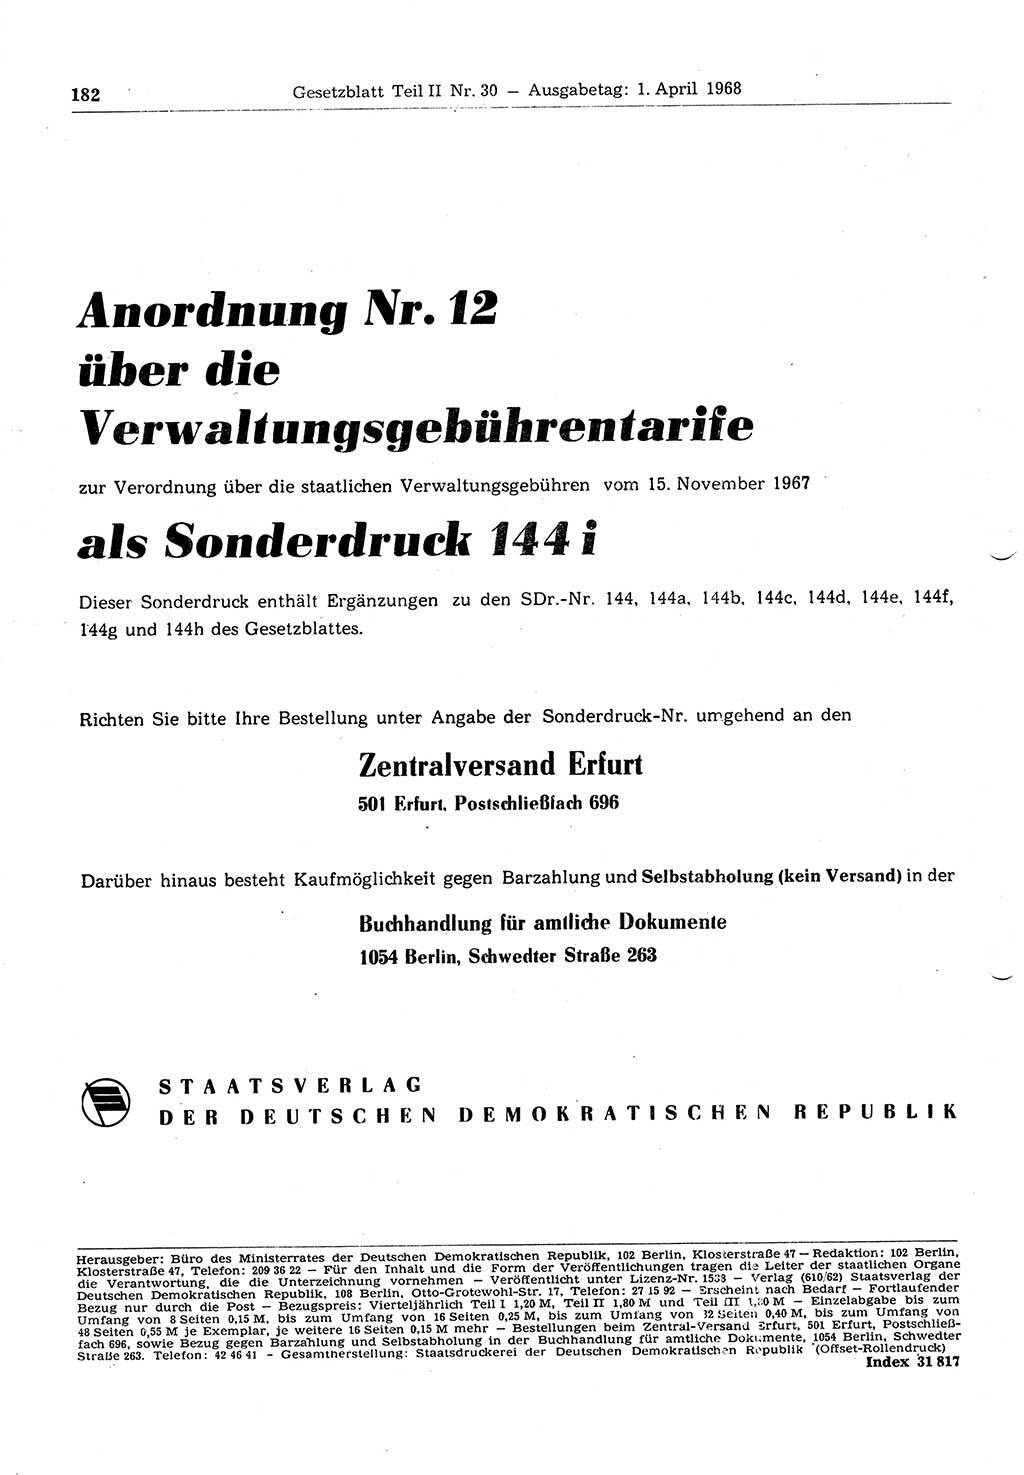 Gesetzblatt (GBl.) der Deutschen Demokratischen Republik (DDR) Teil ⅠⅠ 1968, Seite 182 (GBl. DDR ⅠⅠ 1968, S. 182)